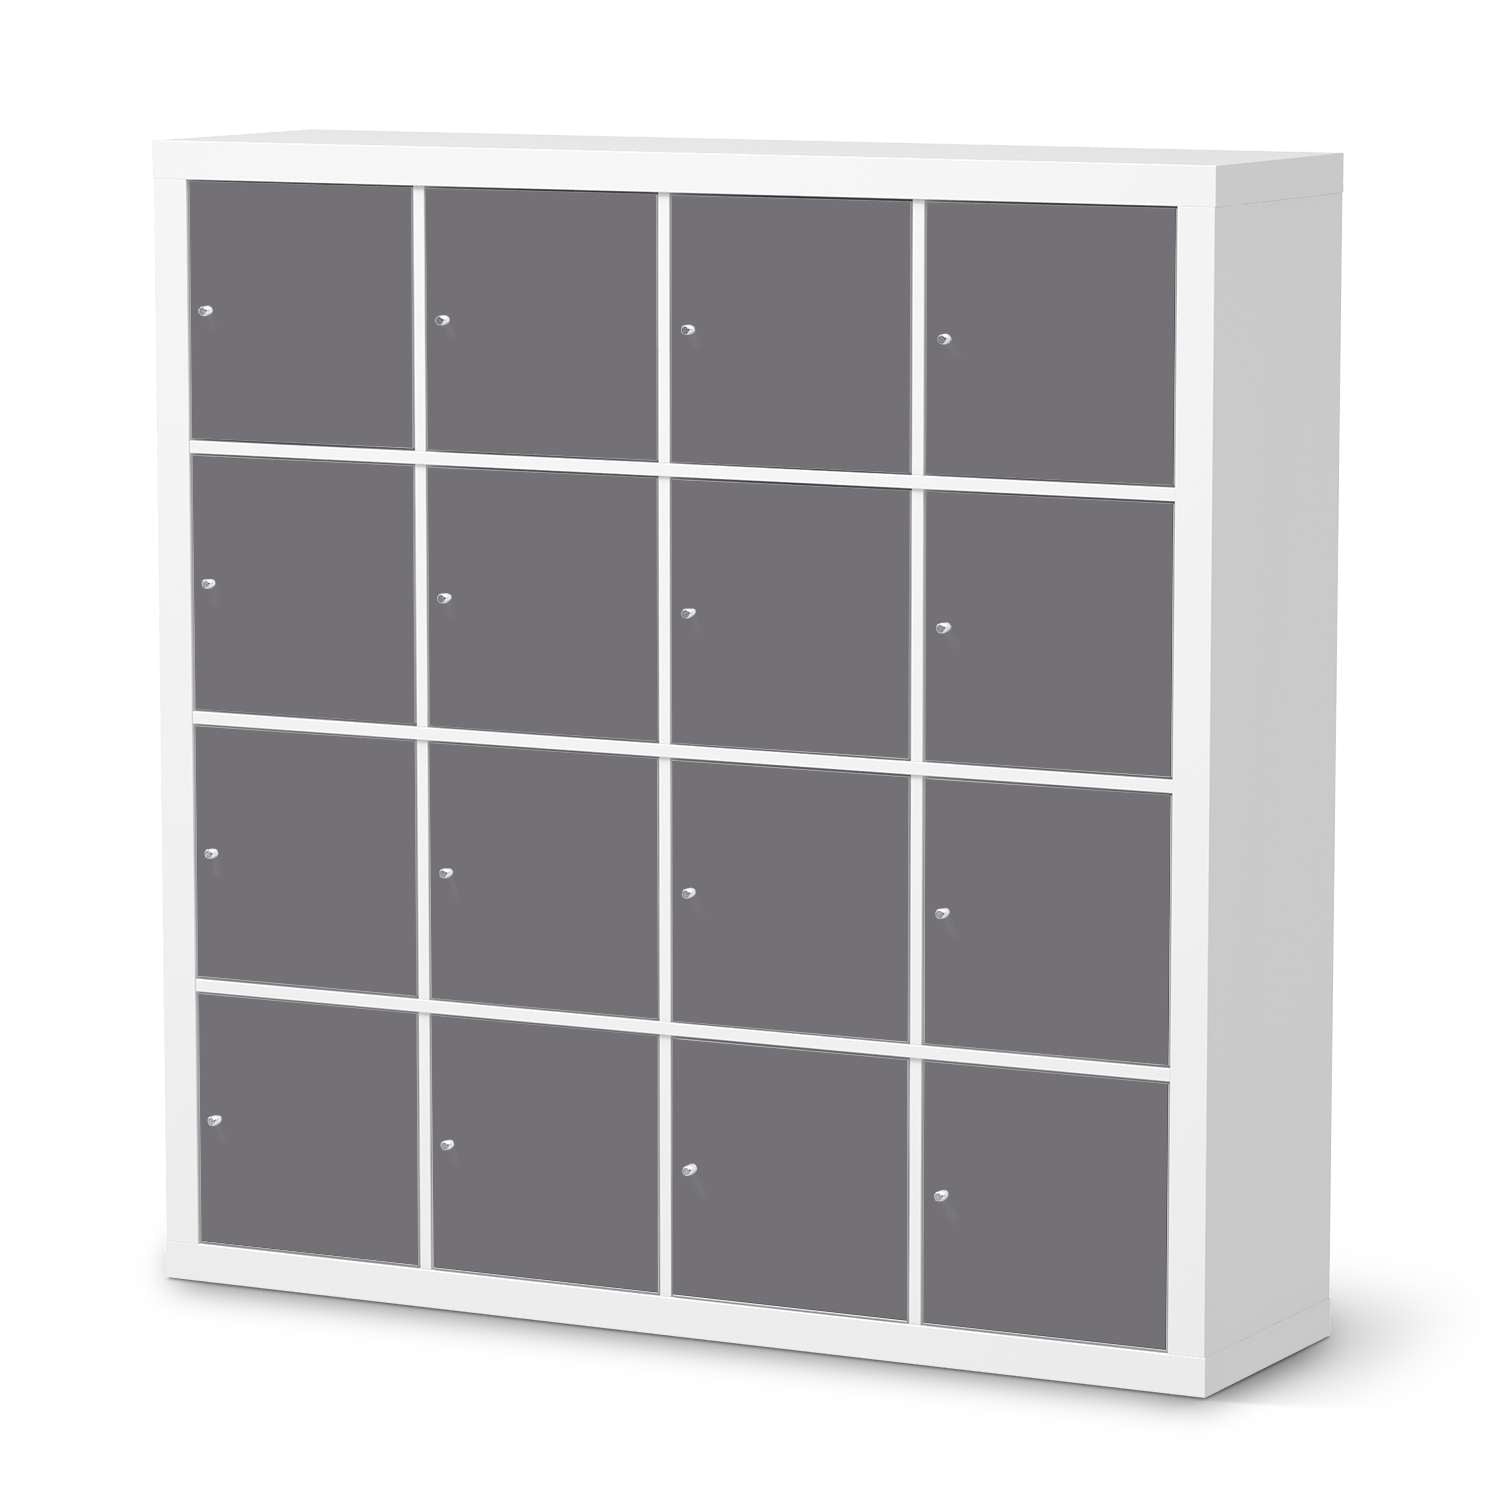 Selbstklebende Folie IKEA Expedit Regal 16 T?ren - Design: Grau Light von creatisto